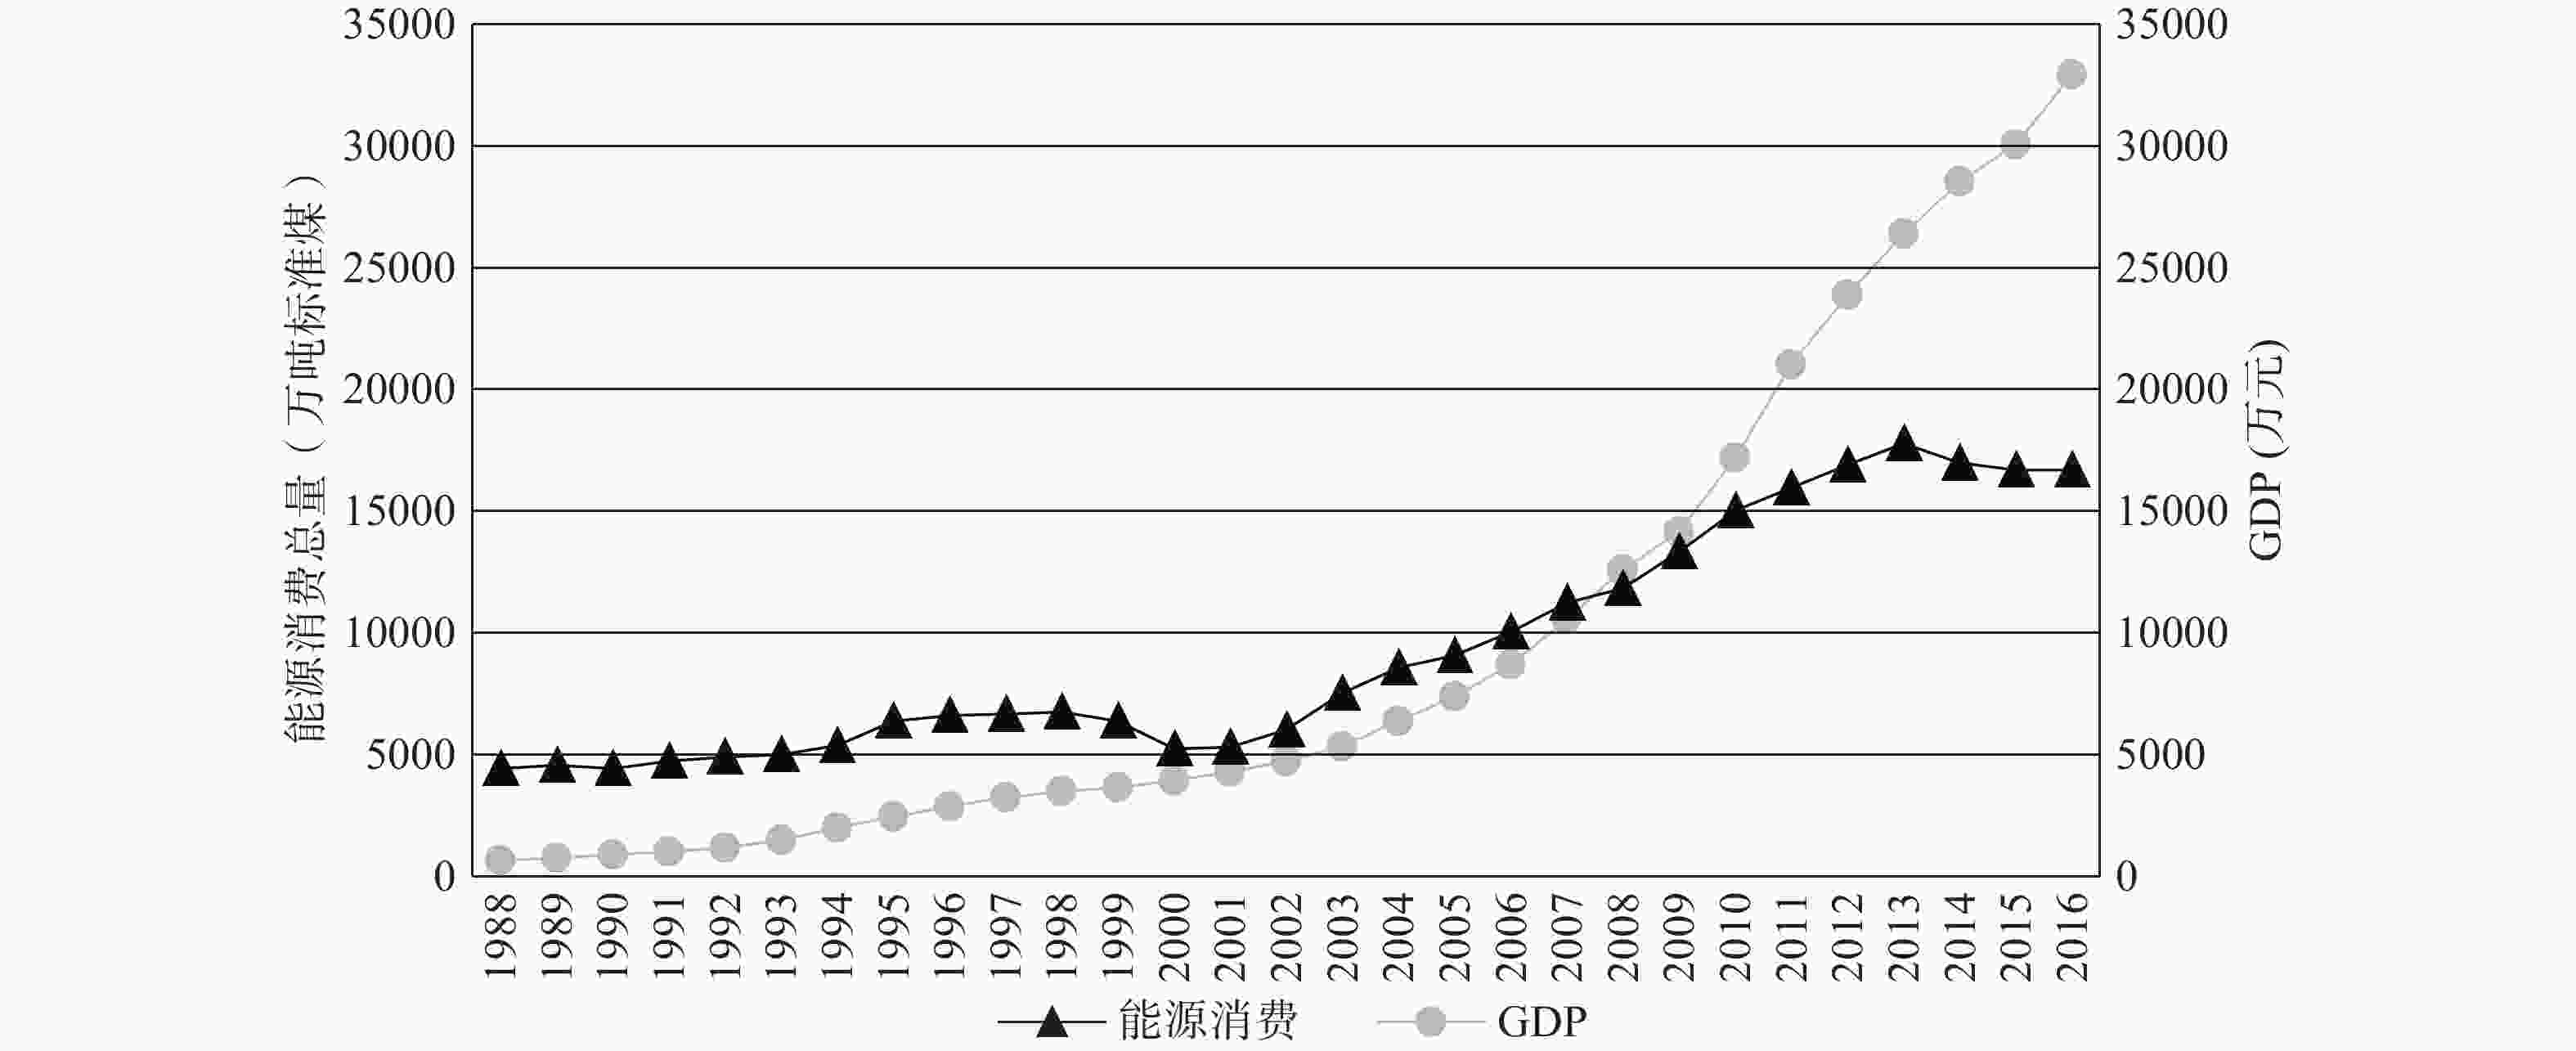 图 1          1988—2016年能源消费总量与gdp增长趋势